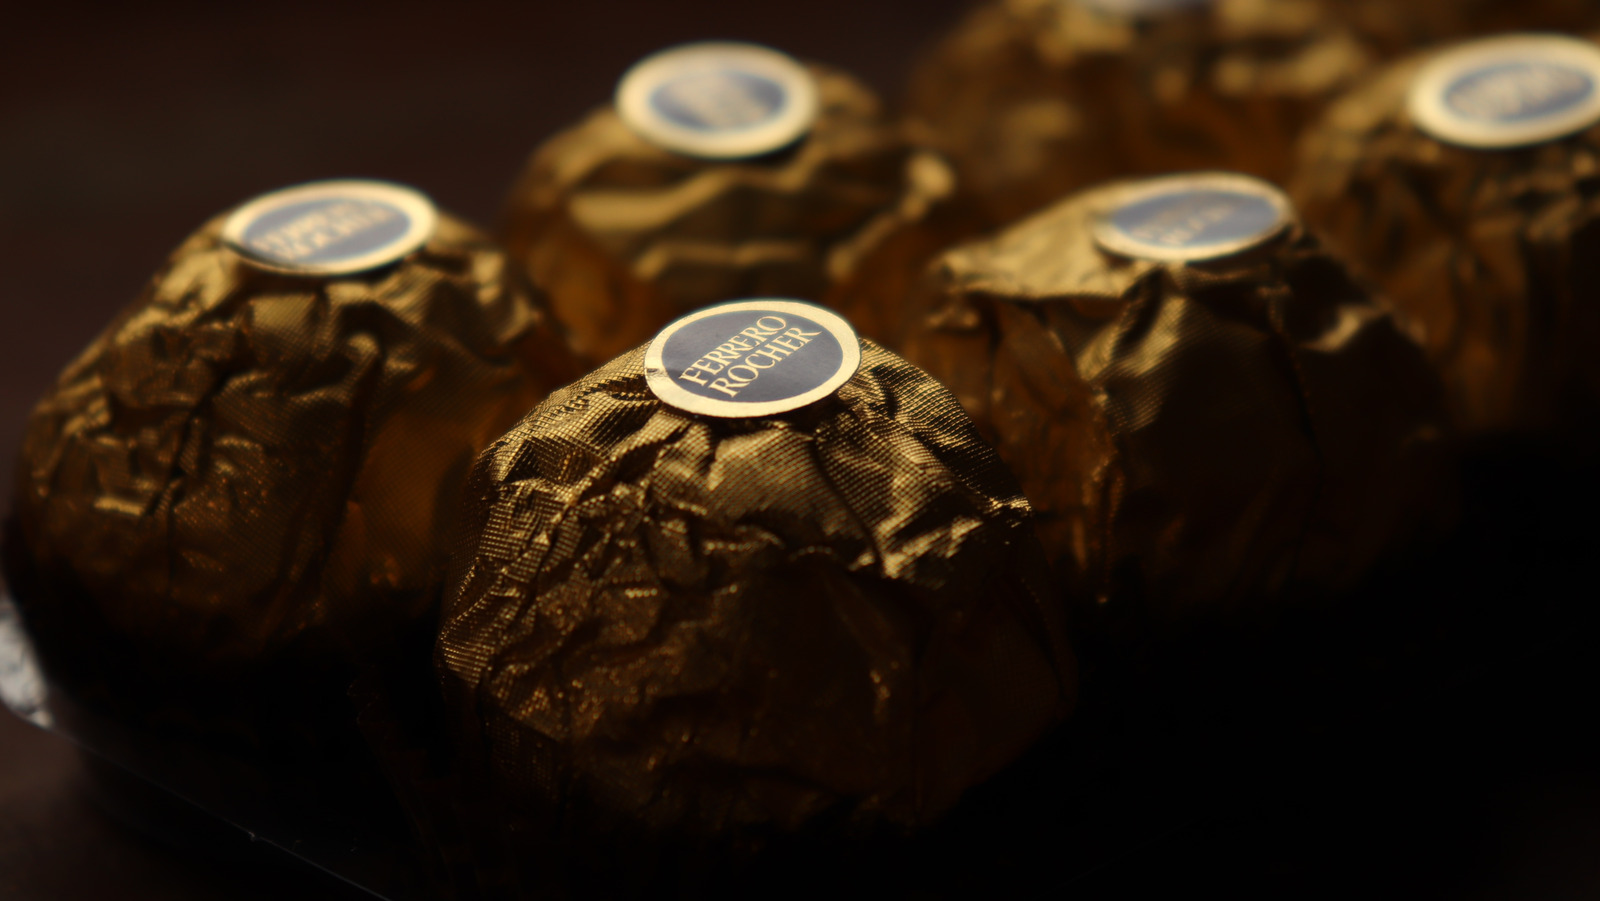 The Untold Truth Of Ferrero Rocher Chocolate